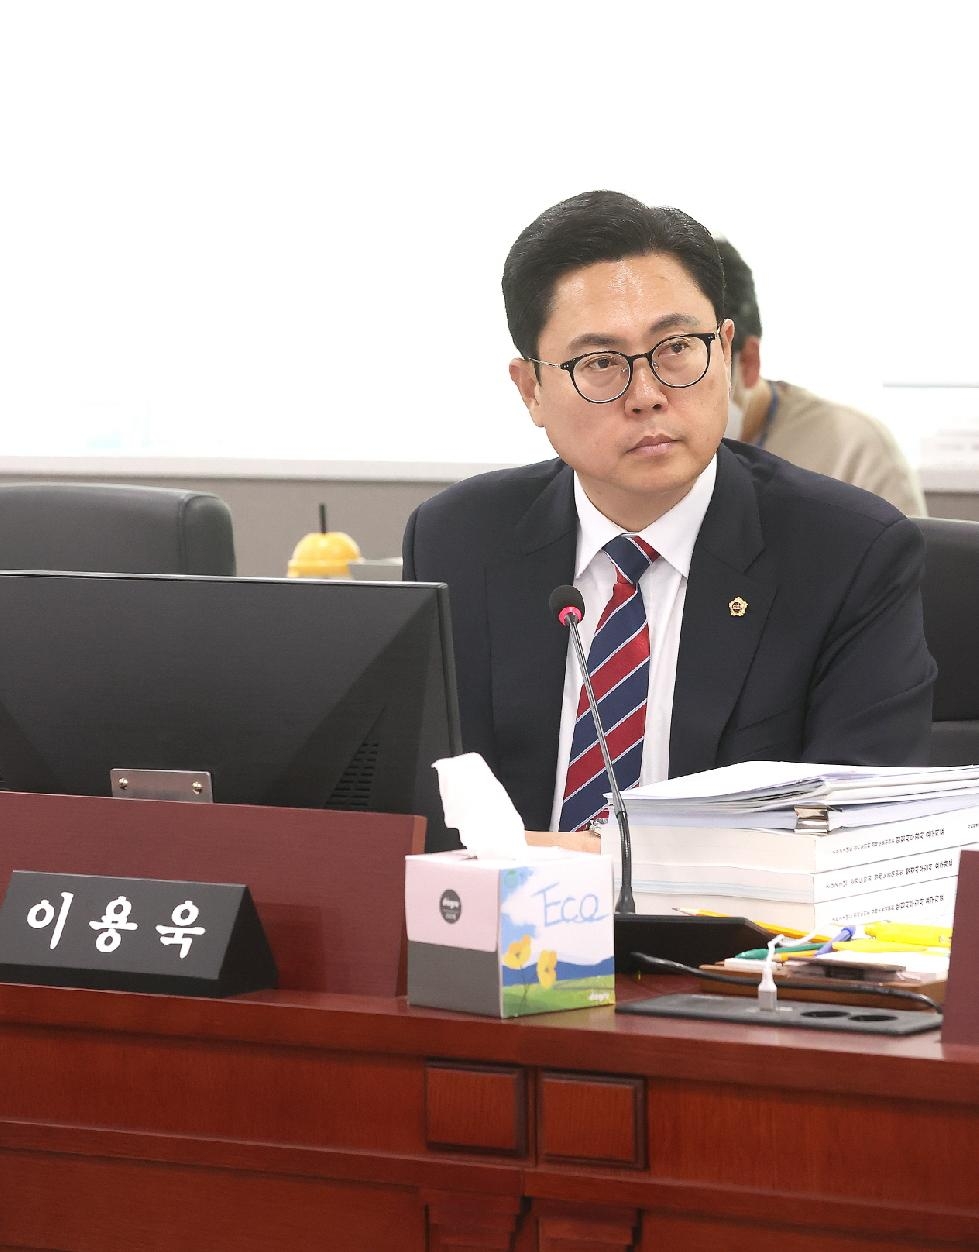 경기도의회 이용욱 의원, 정부의 사회적경제 정책에 대응한 경기도 방안에 